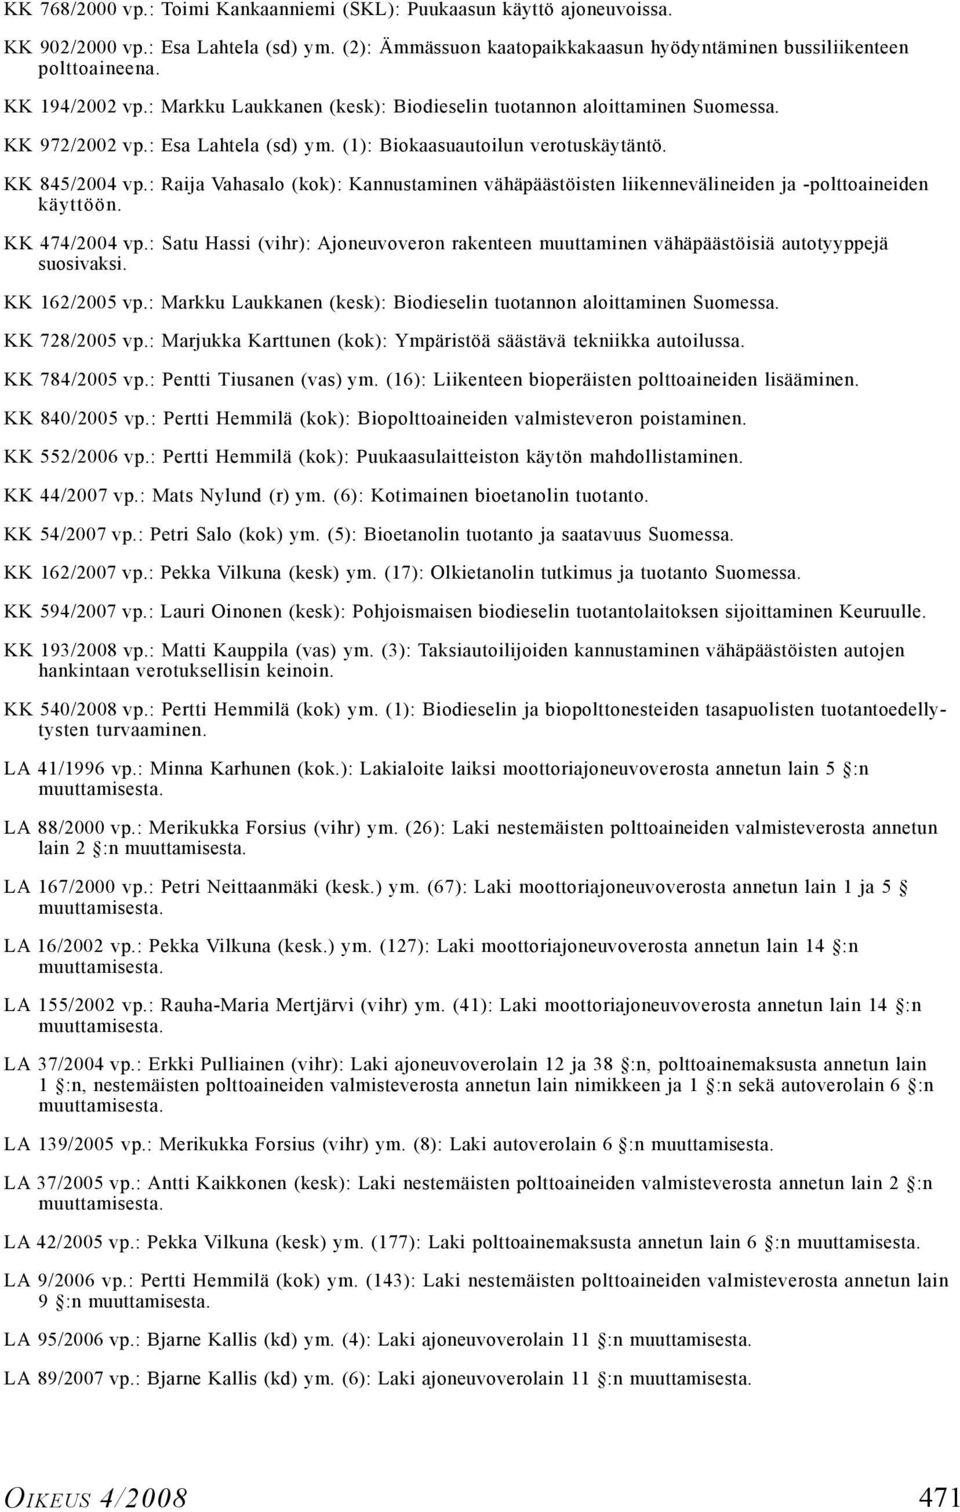 : Raija Vahasalo (kok): Kannustaminen vähäpäästöisten liikennevälineiden ja -polttoaineiden käyttöön. KK 474/2004 vp.